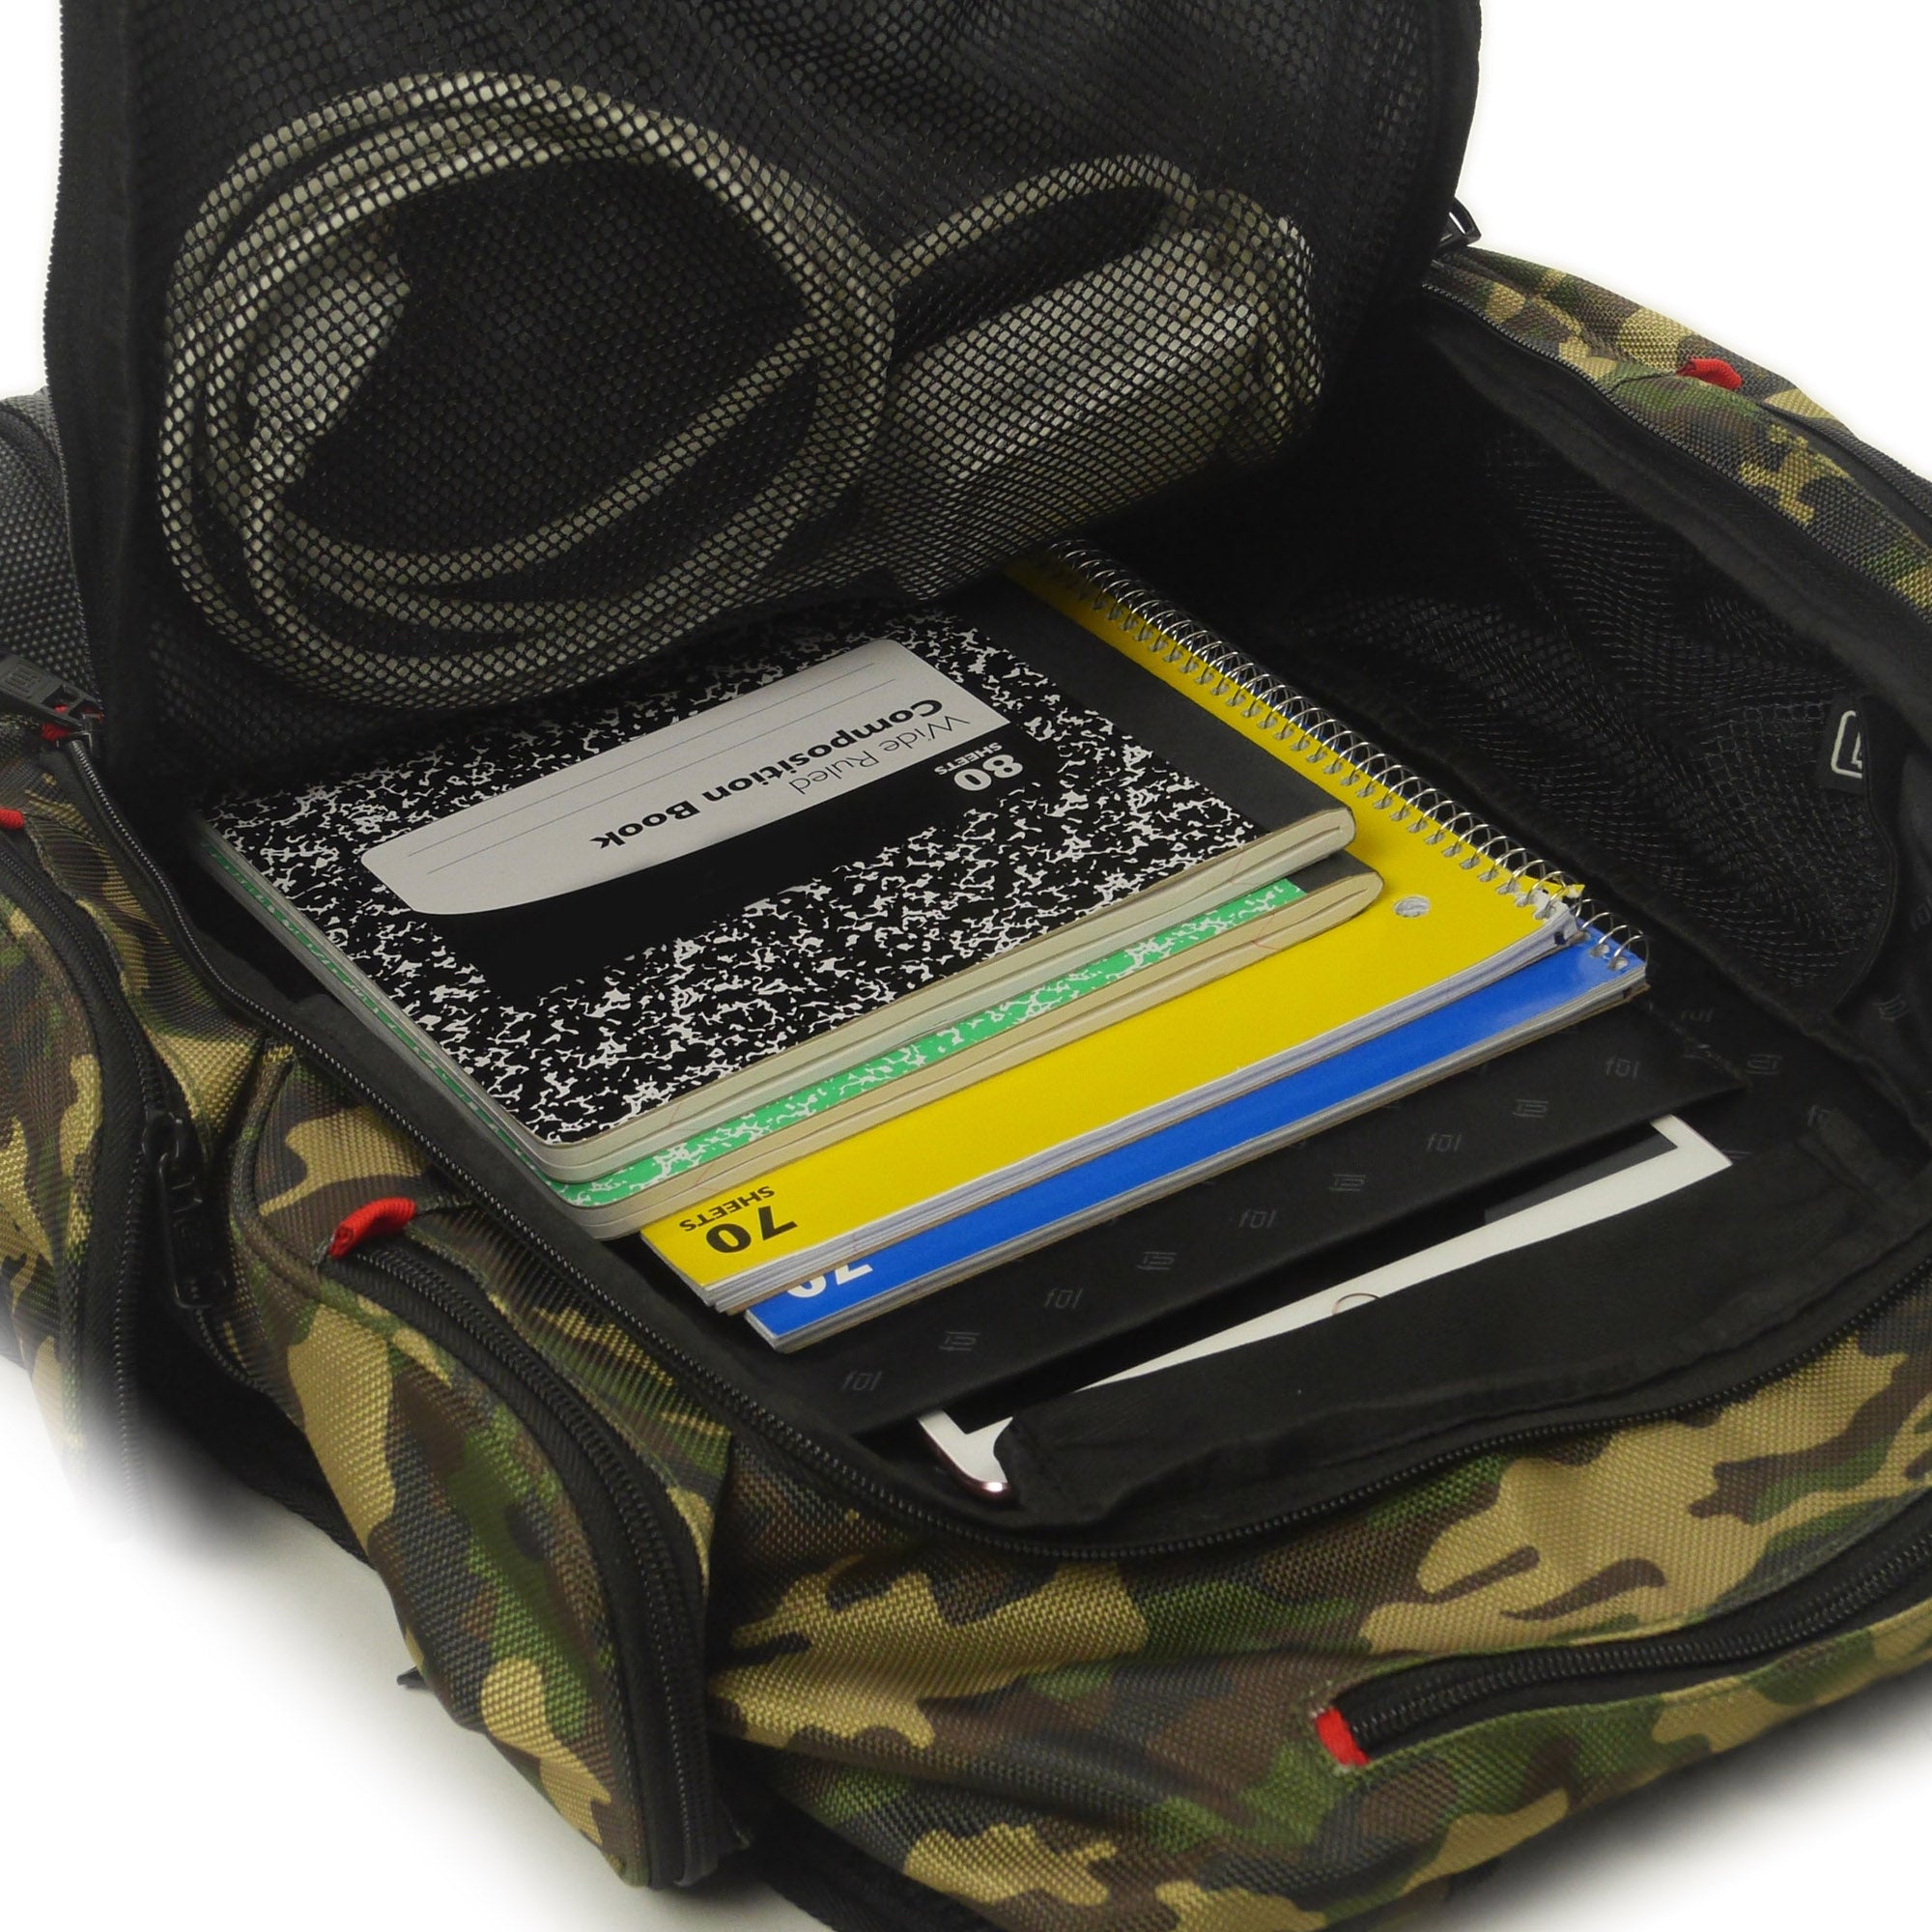 FUL Refugee 15-inch Laptop Backpack